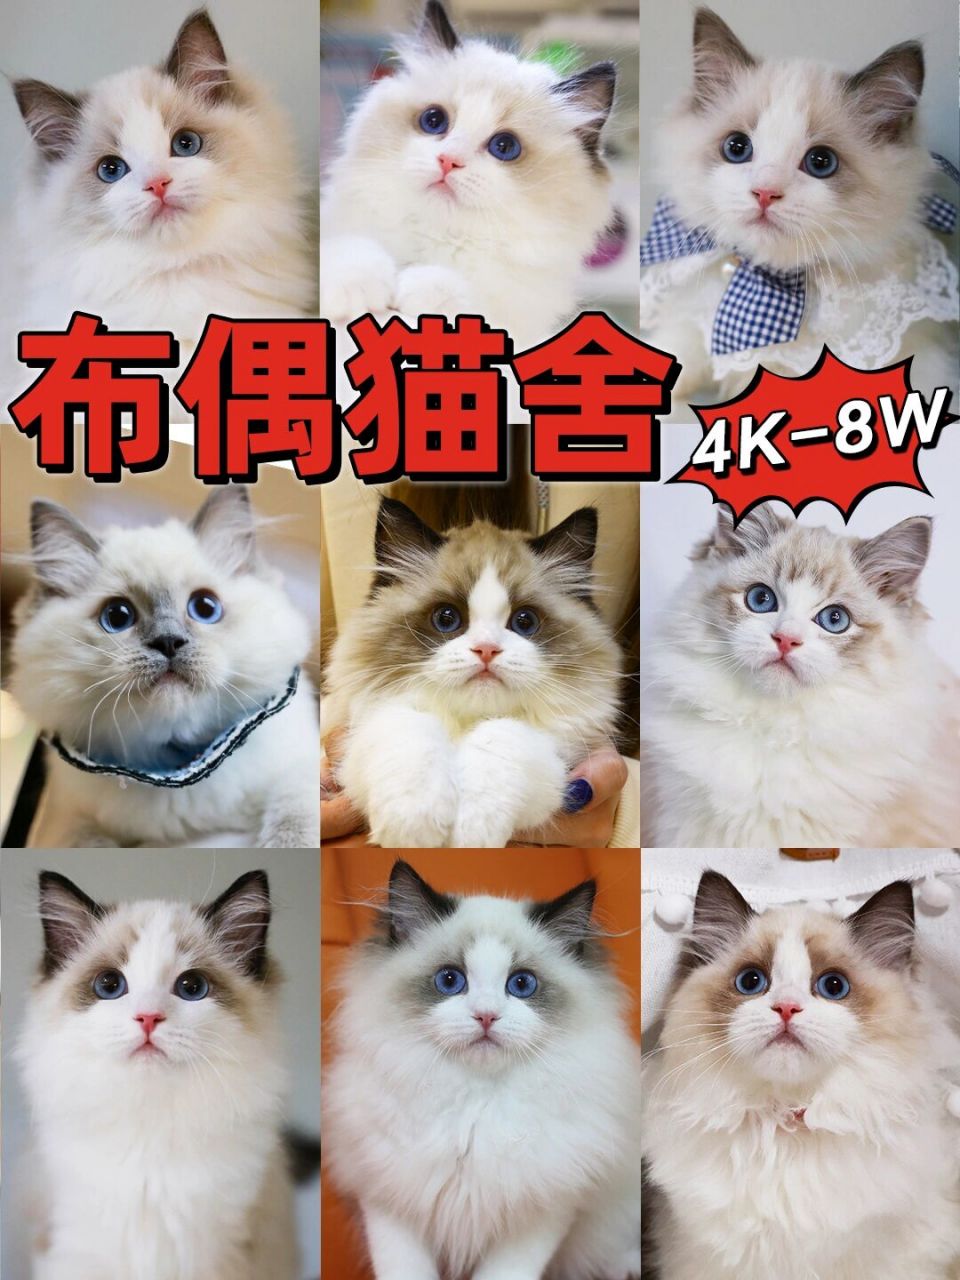 布偶猫价格 最贵图片